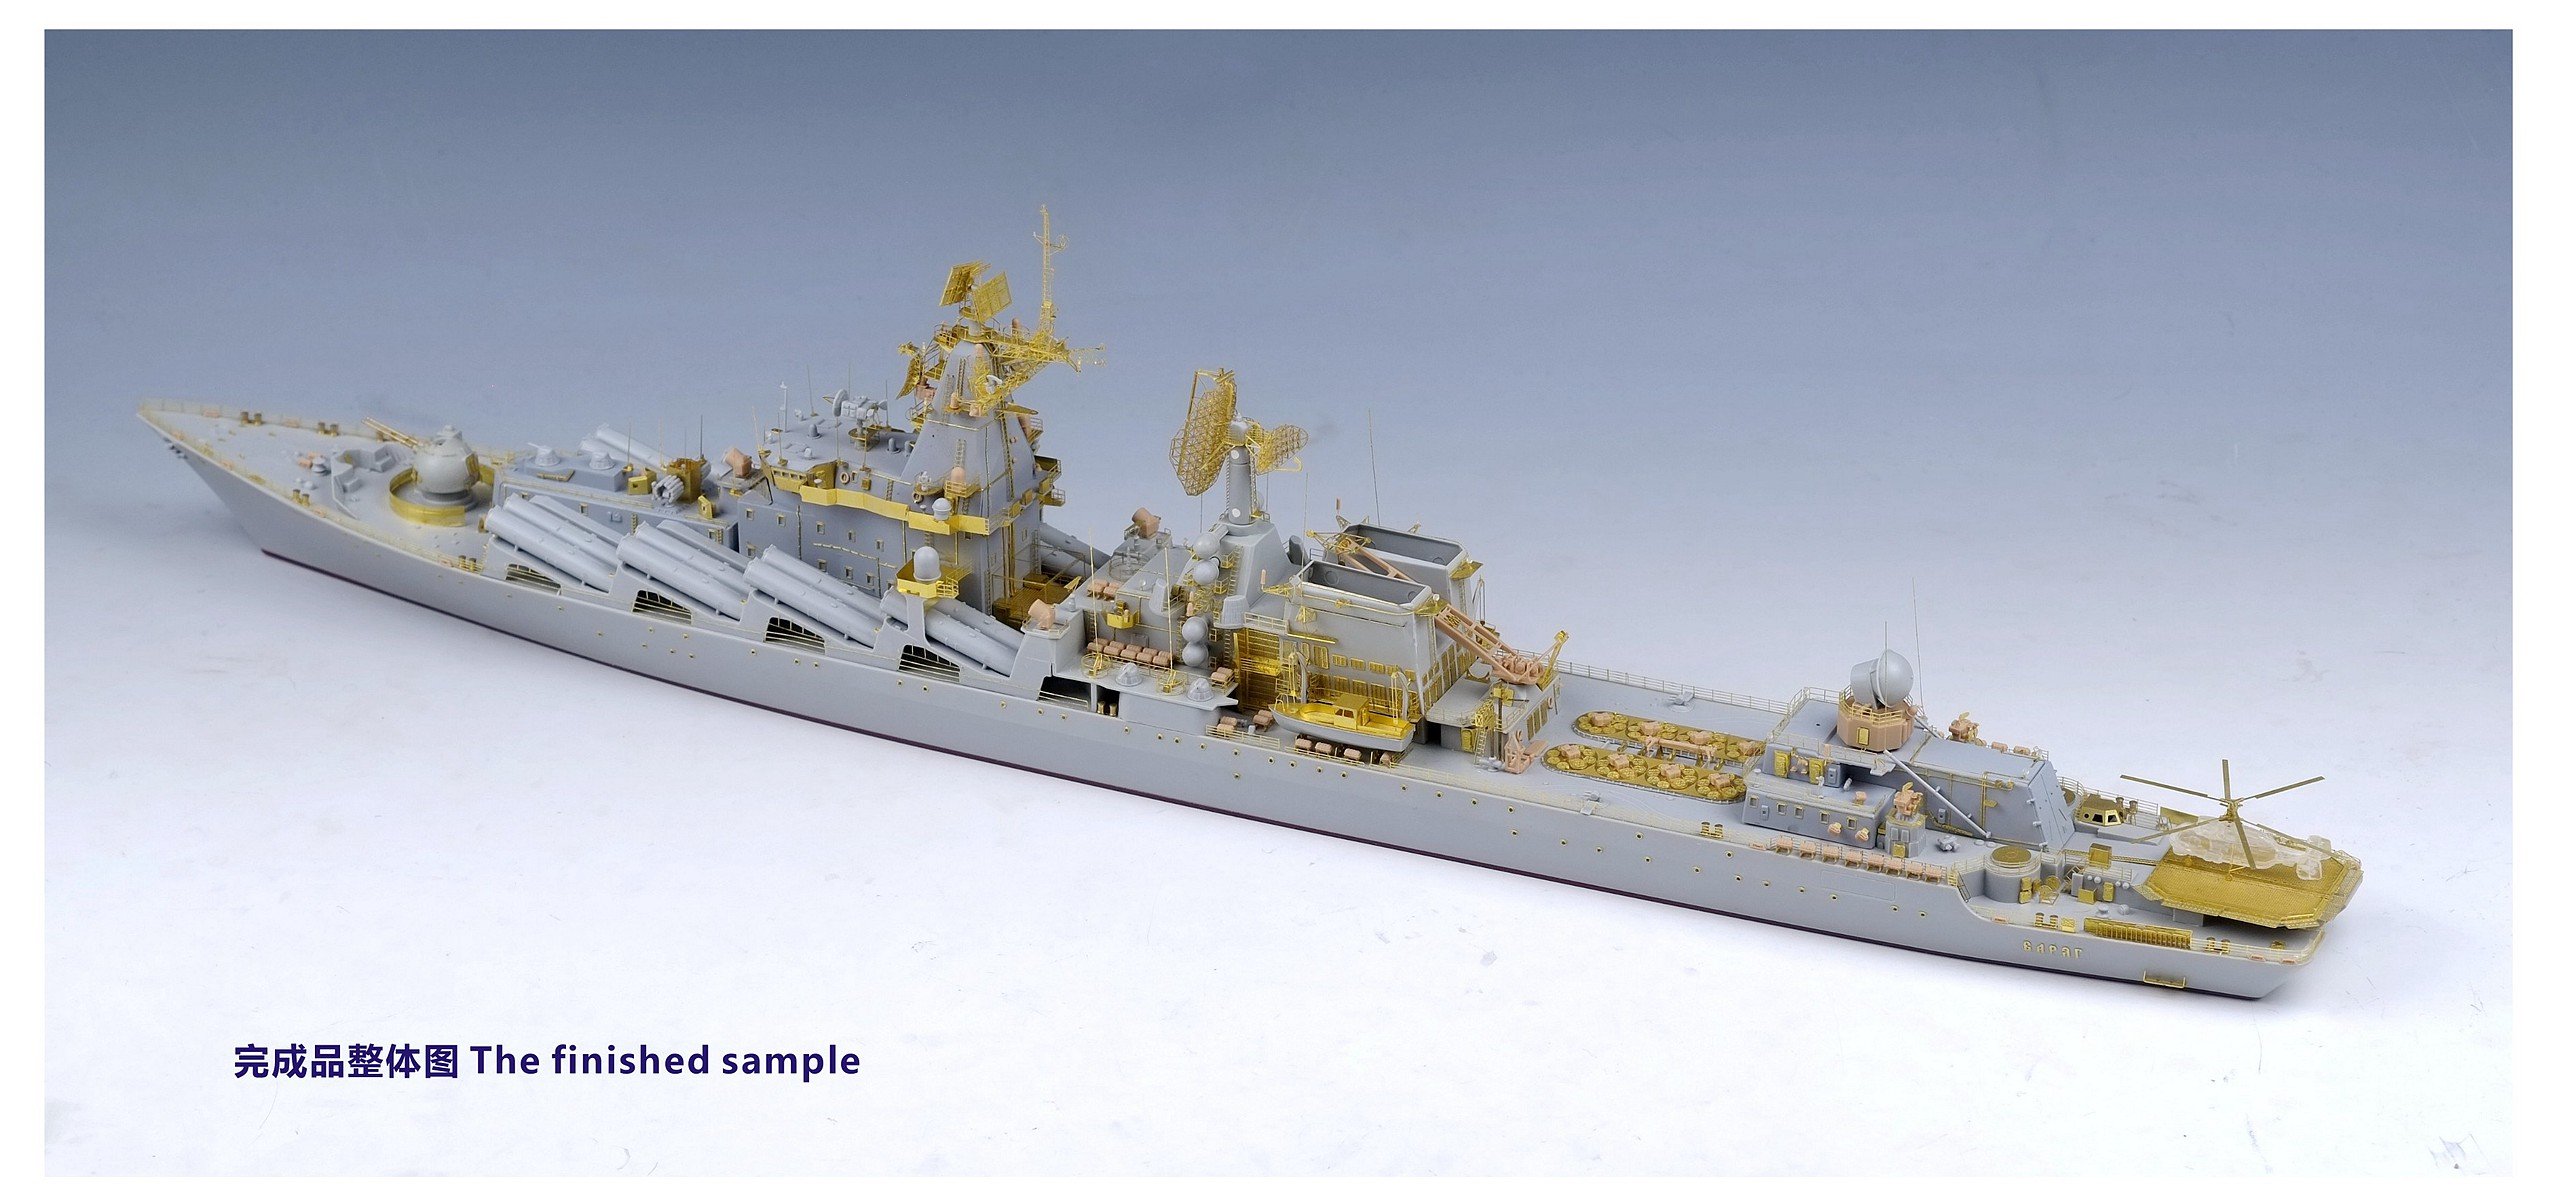 1/350 现代俄国海军莫斯科号导弹巡洋舰(1164型)完全改造套件(配小号手04518)